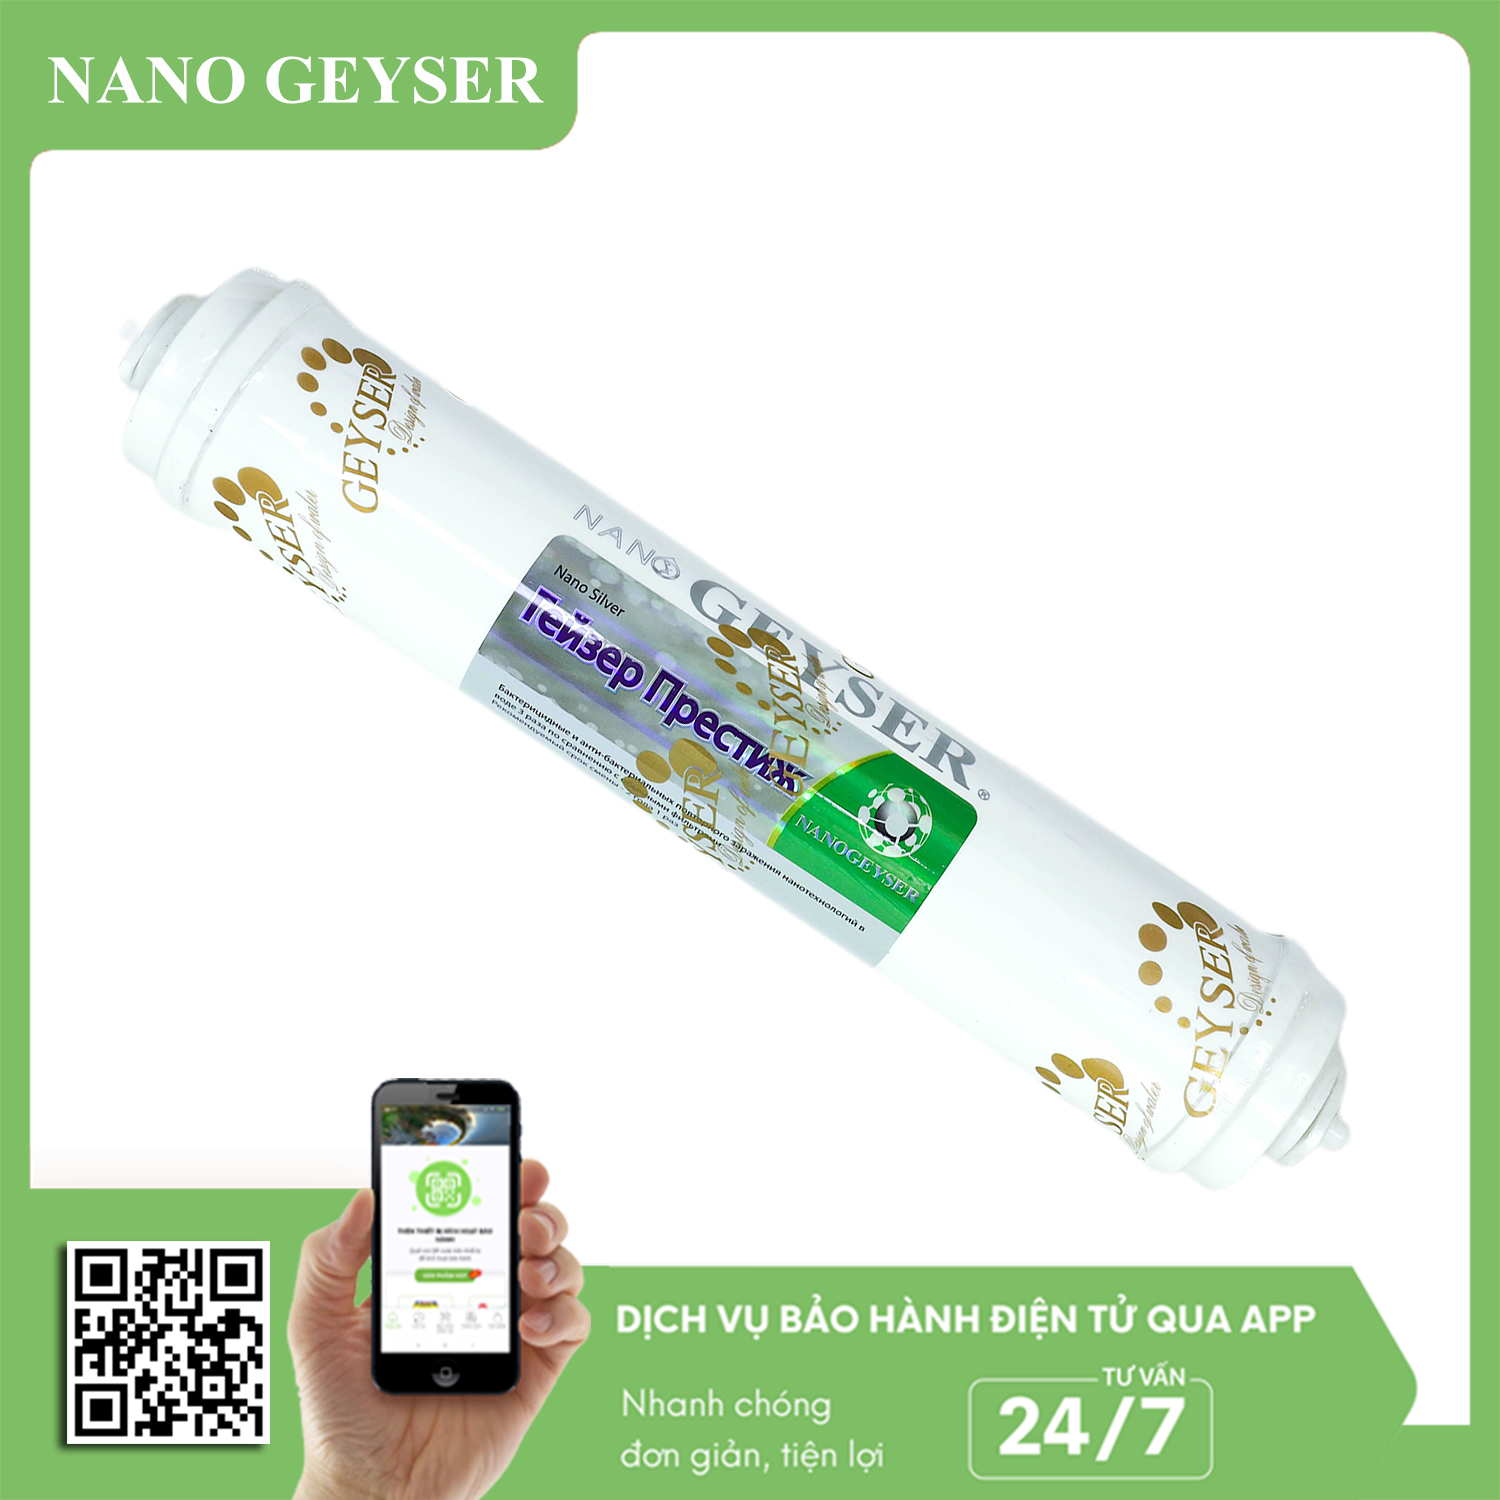 Lõi Nanosilver Nano Geyser